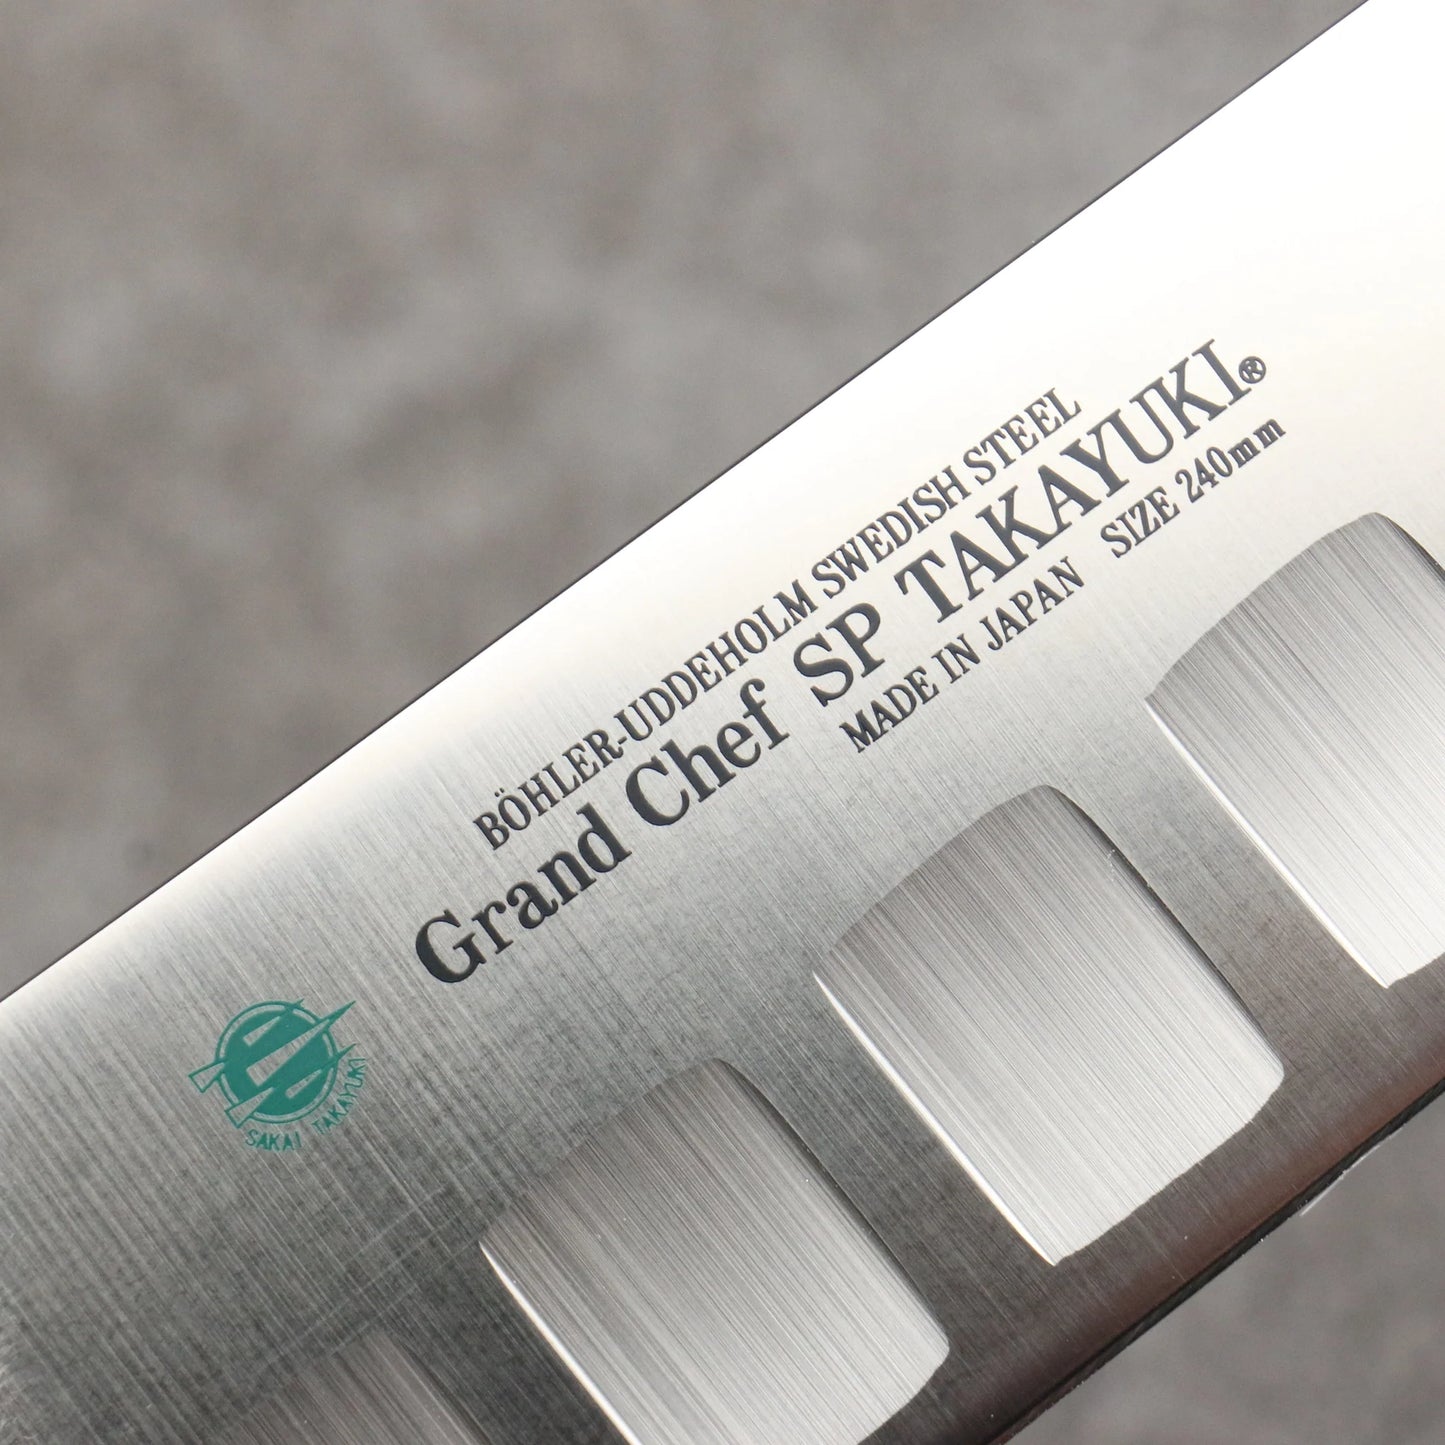 Marke Sakai Takayuki Grand Chef Spezialstahl Uddeholm Schweden Gyuto-Messer, spezialisiert auf Lachs Japanisches Messer 240-mm-Griff SP Typ III (Grüner Wald)